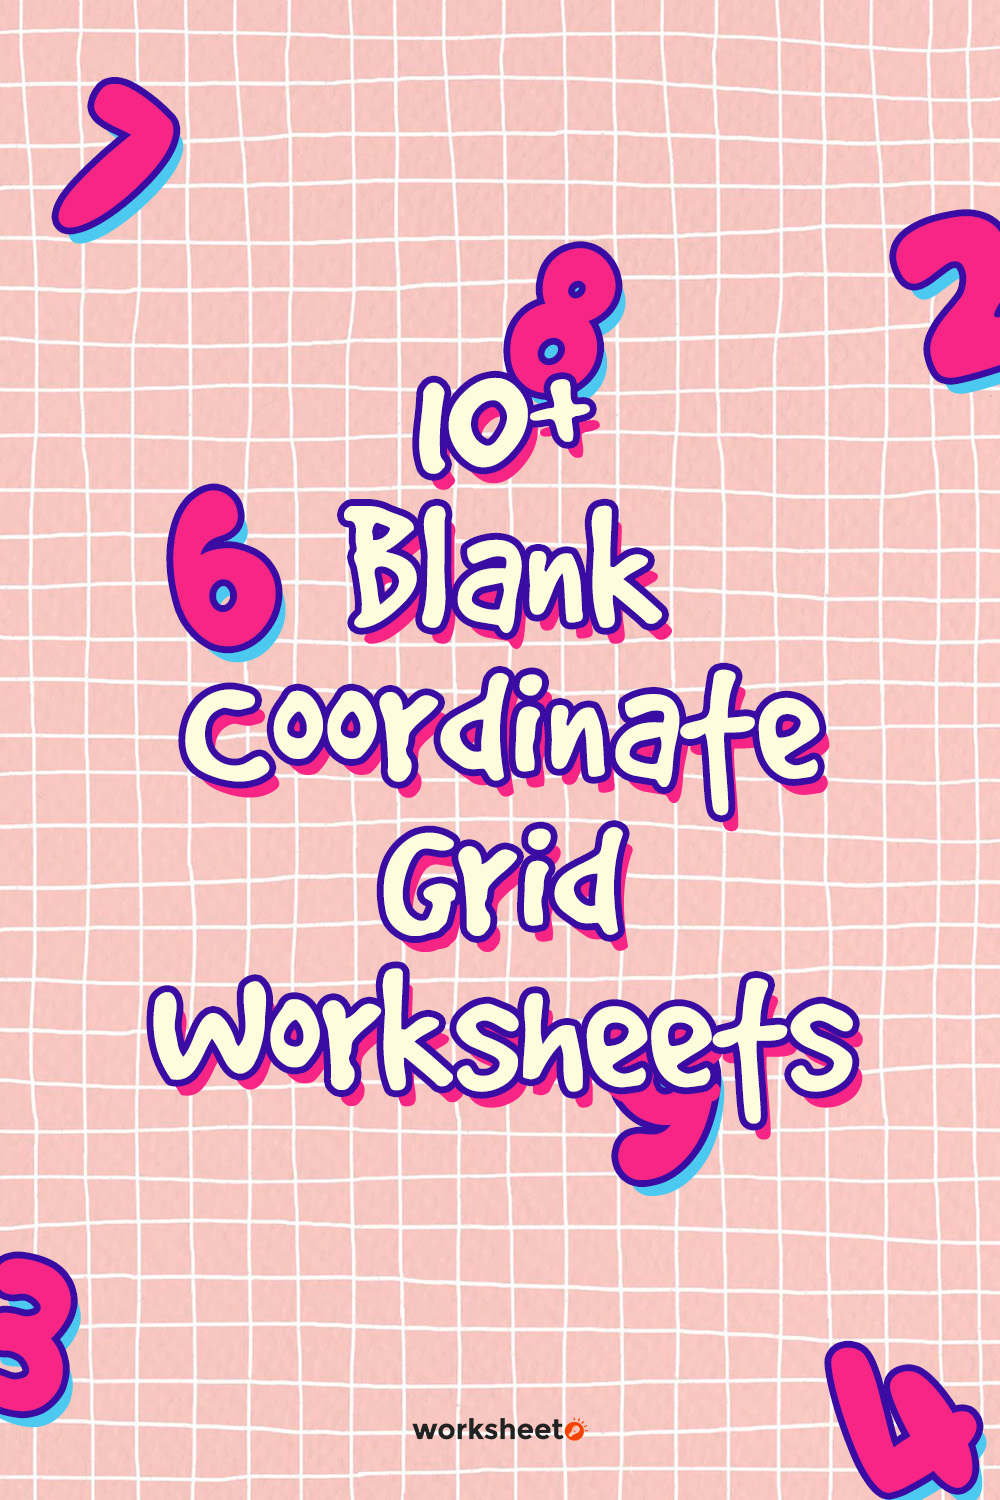 Blank Coordinate Grid Worksheets